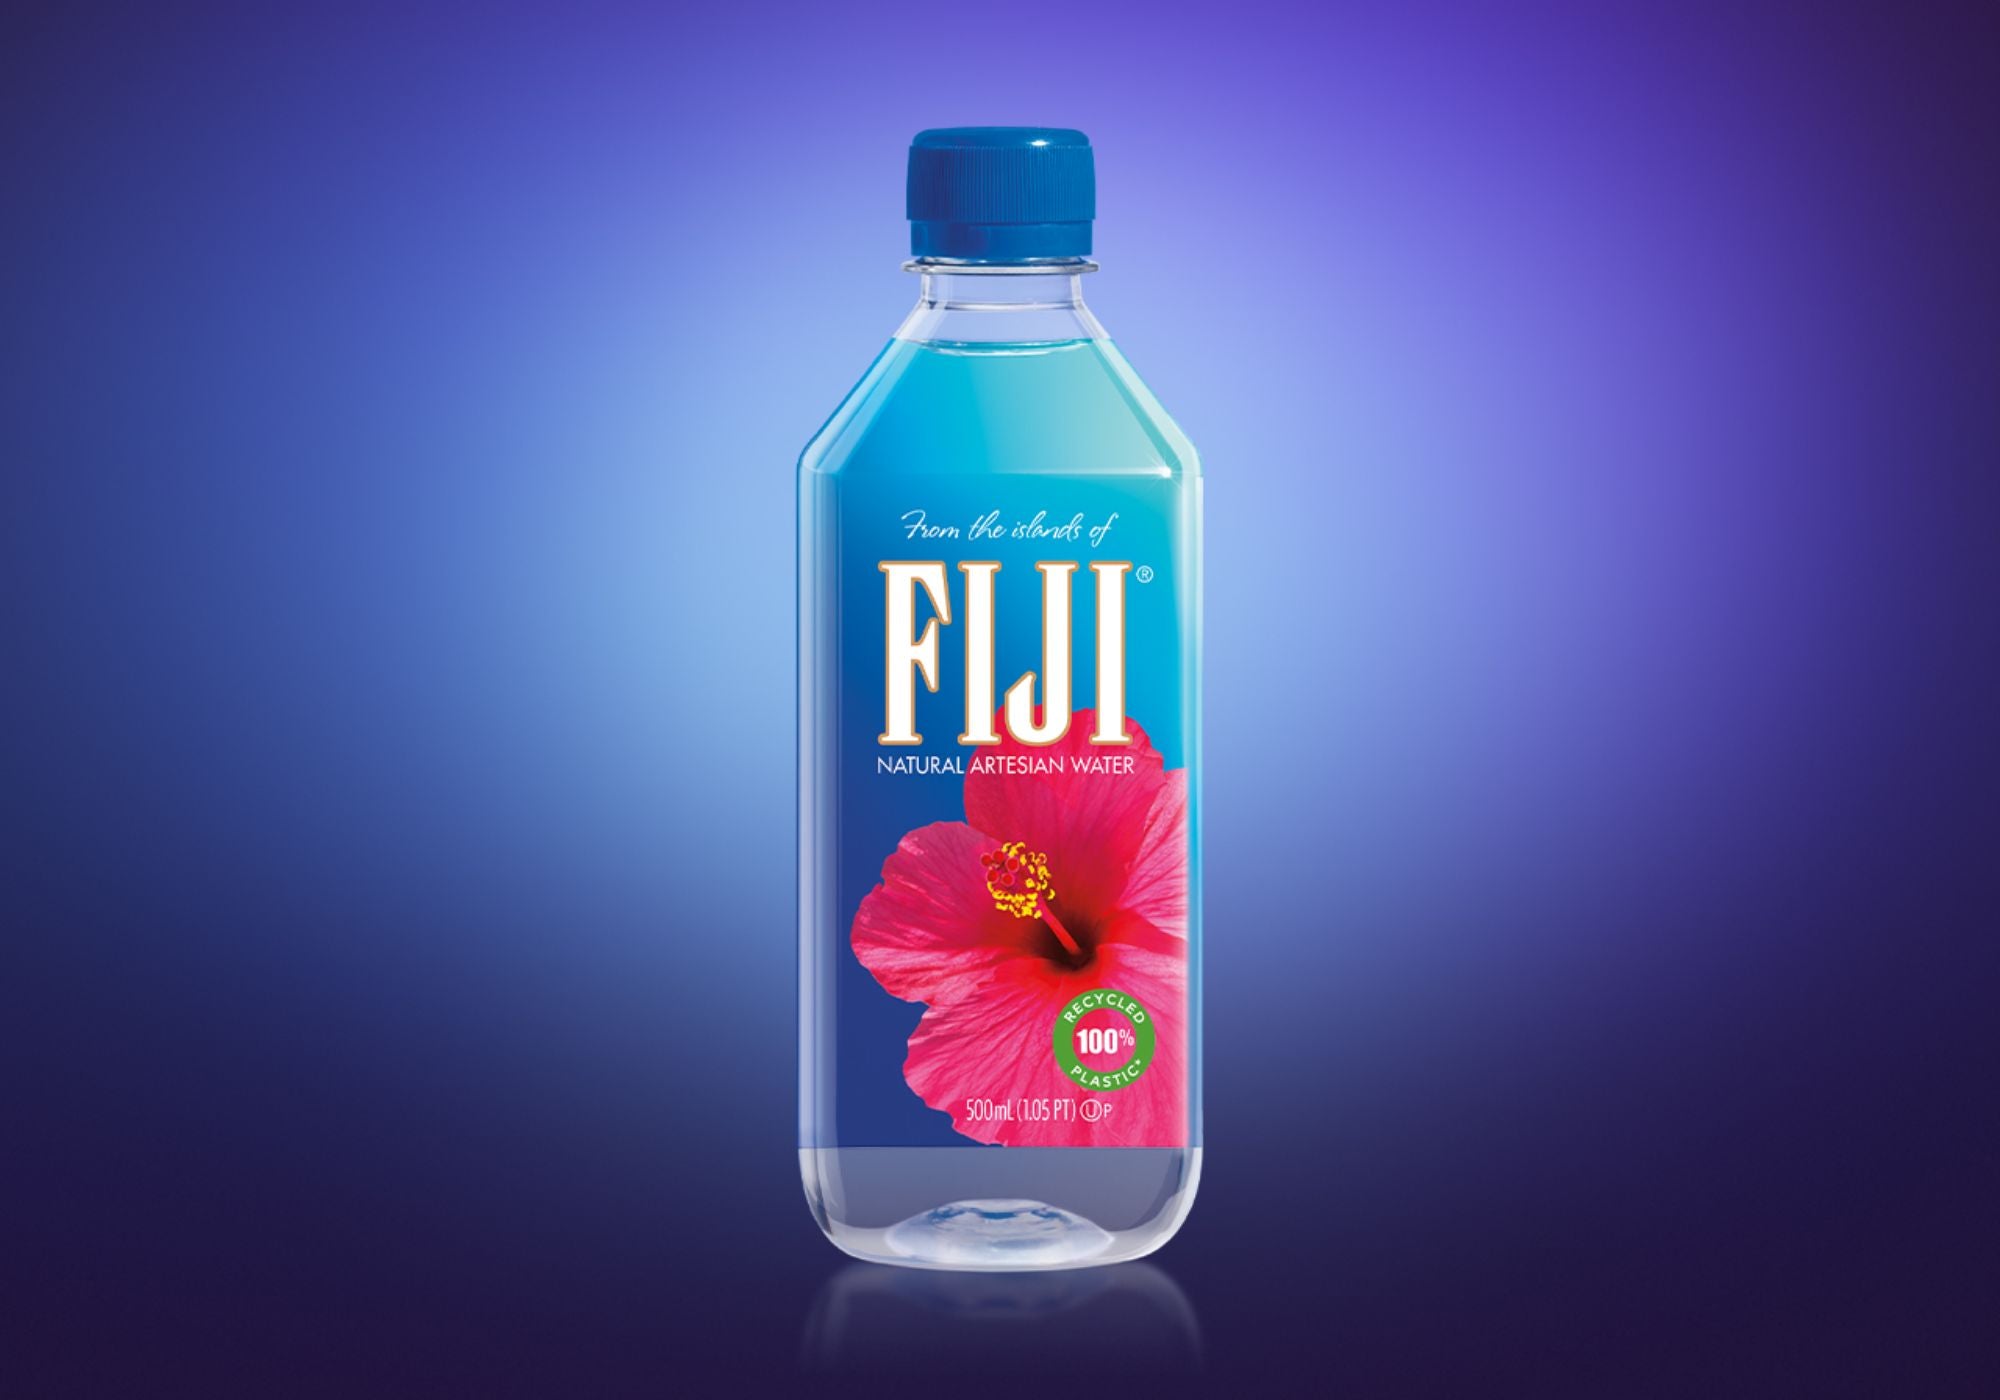 FIJI water is earth's finest water